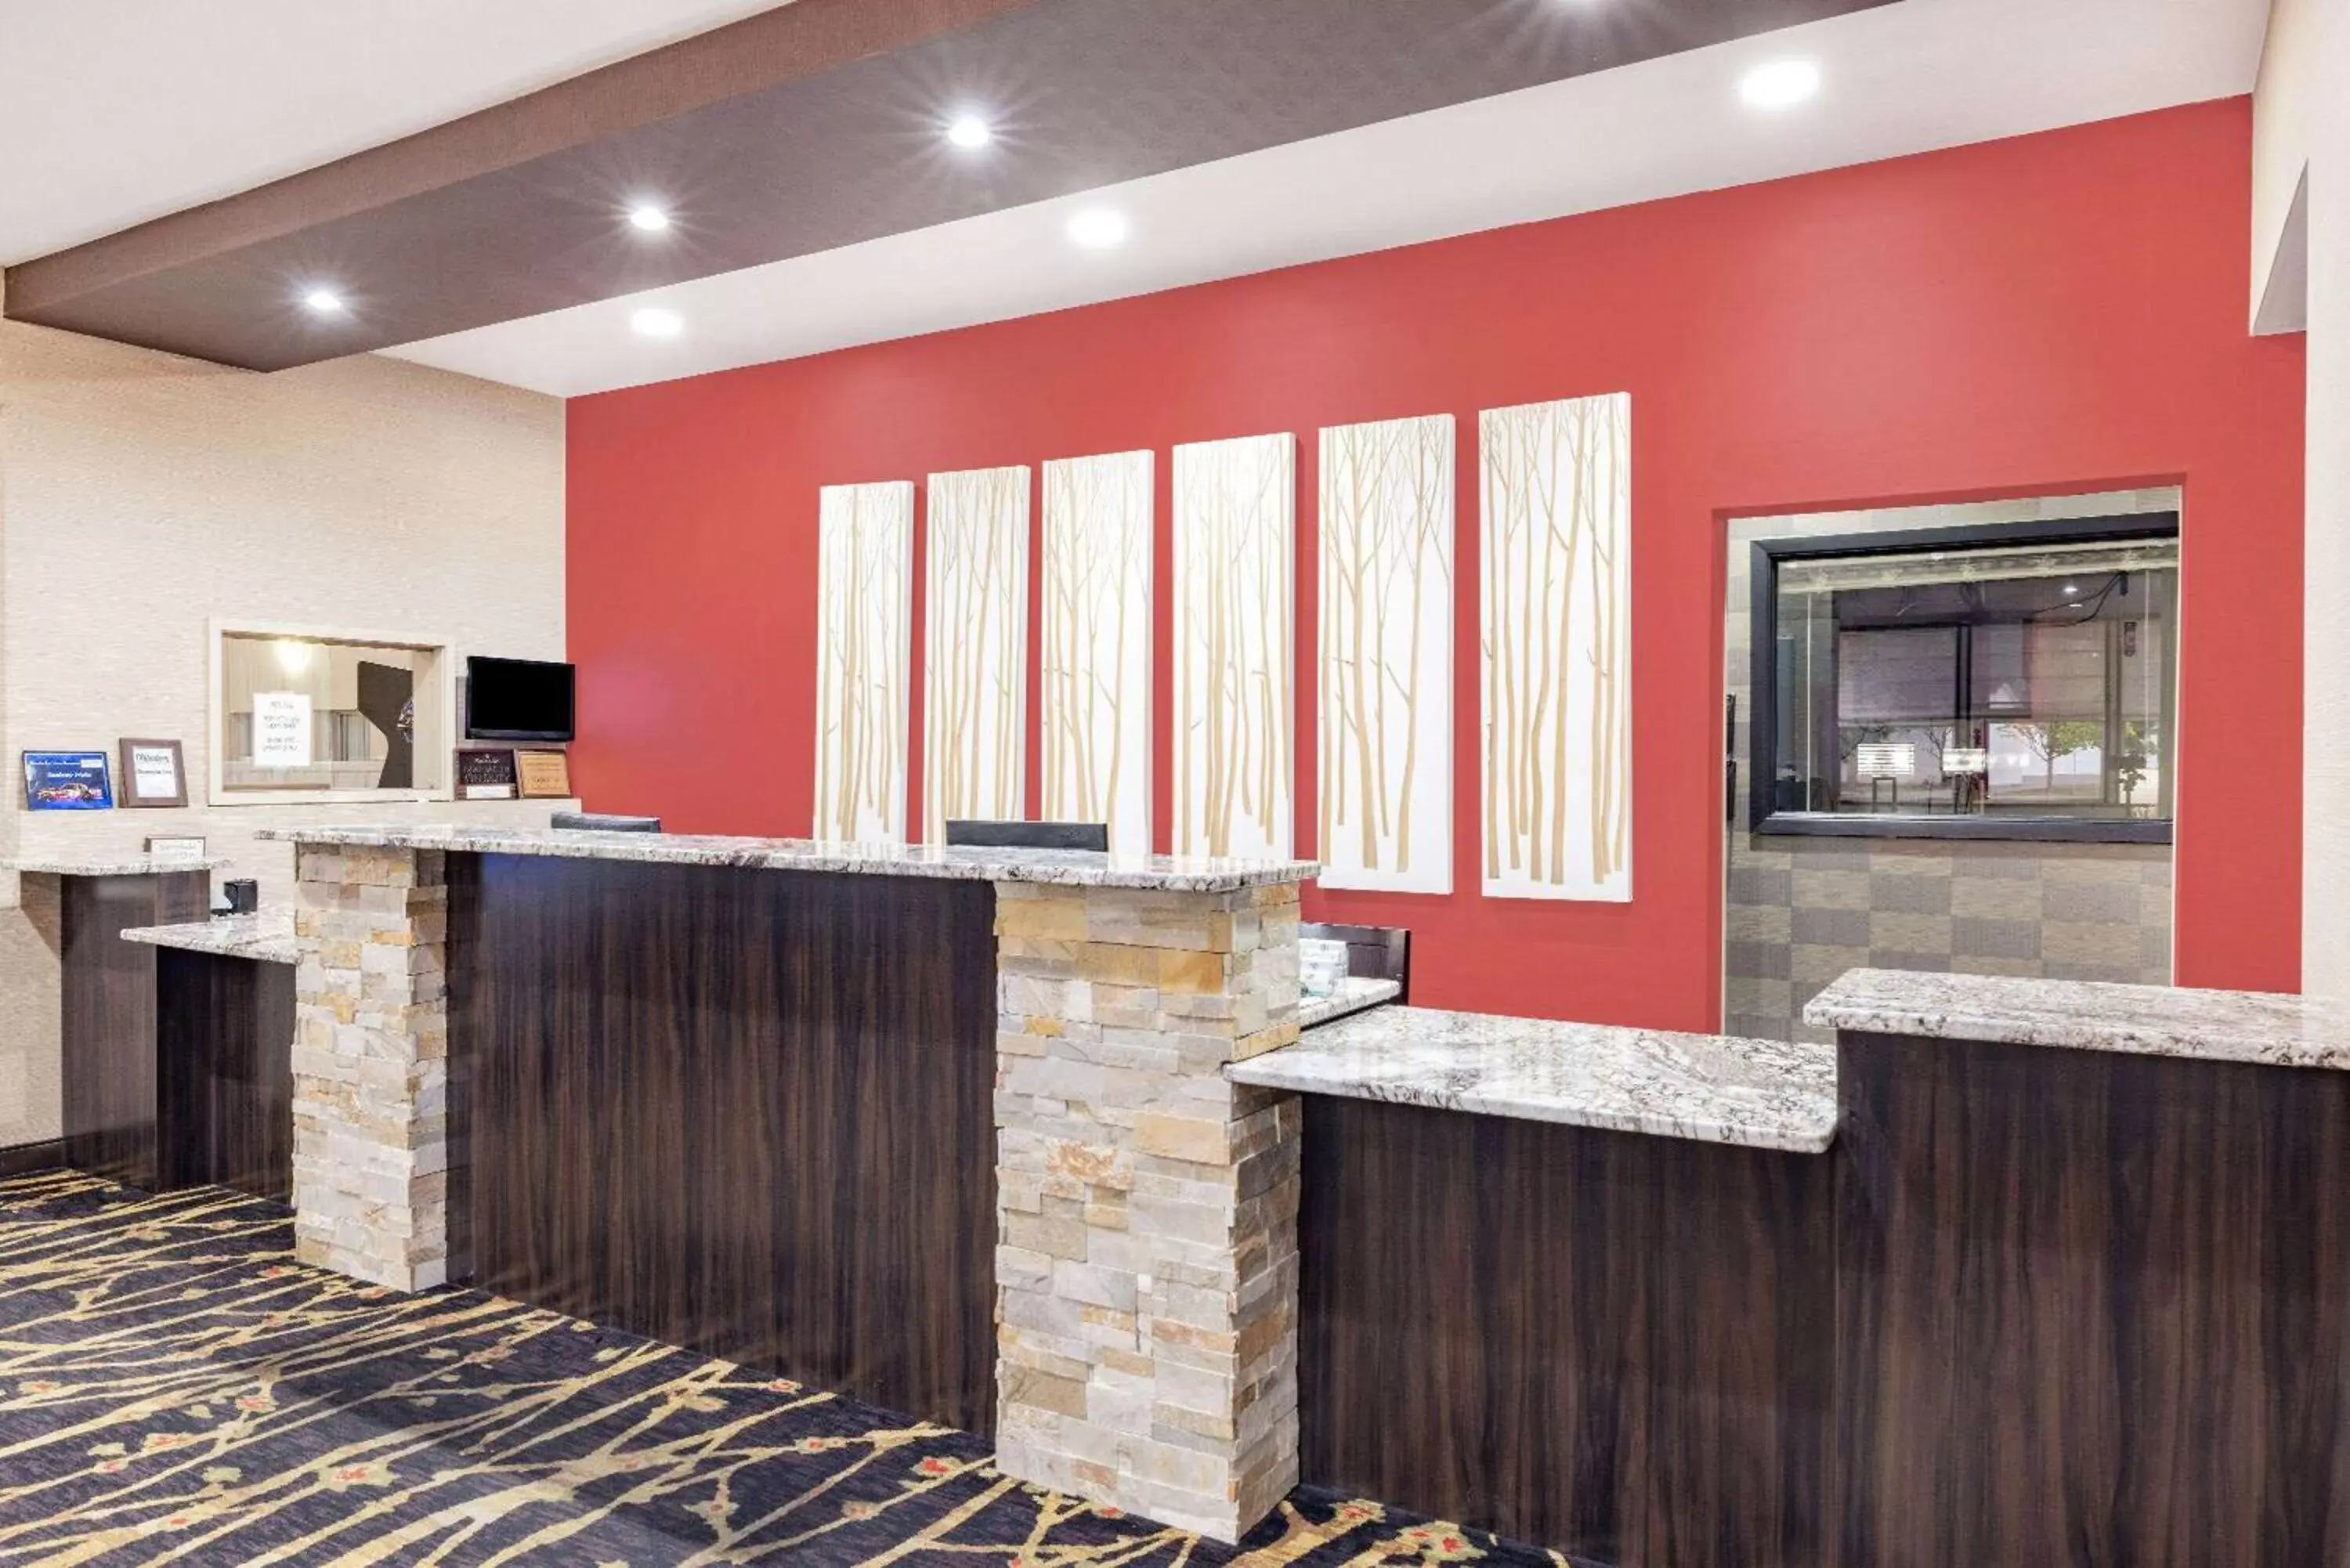 Lobby or reception, Lobby/Reception in Ramada by Wyndham Grand Forks